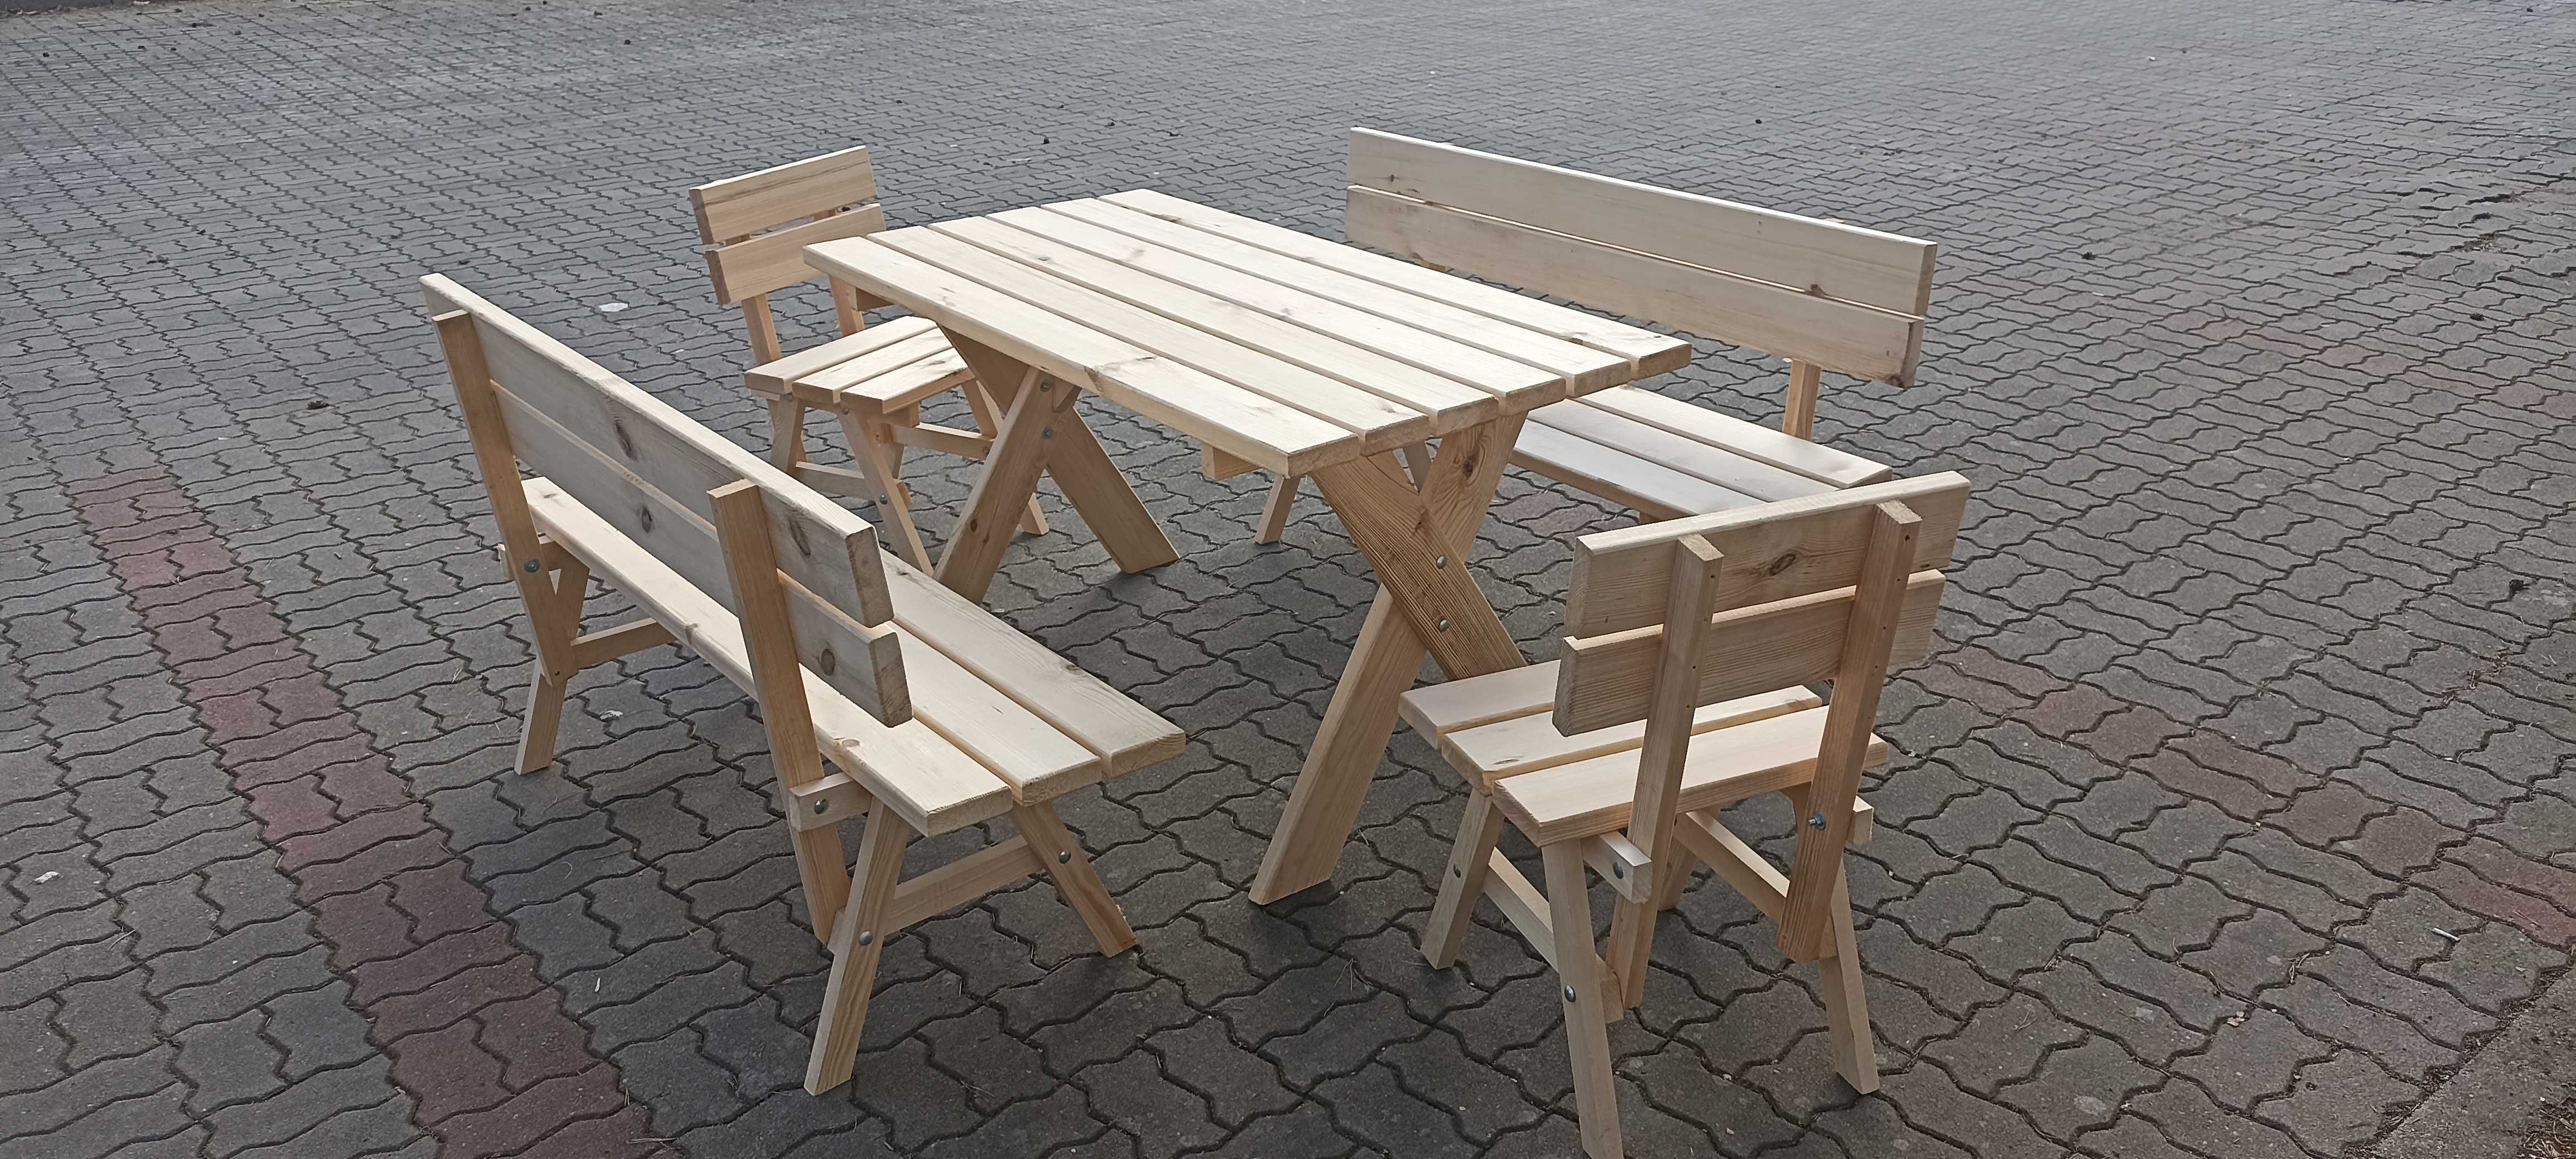 Stół ogrodowy z ławkami tarasowy barowy biesiadny drewniany nowy